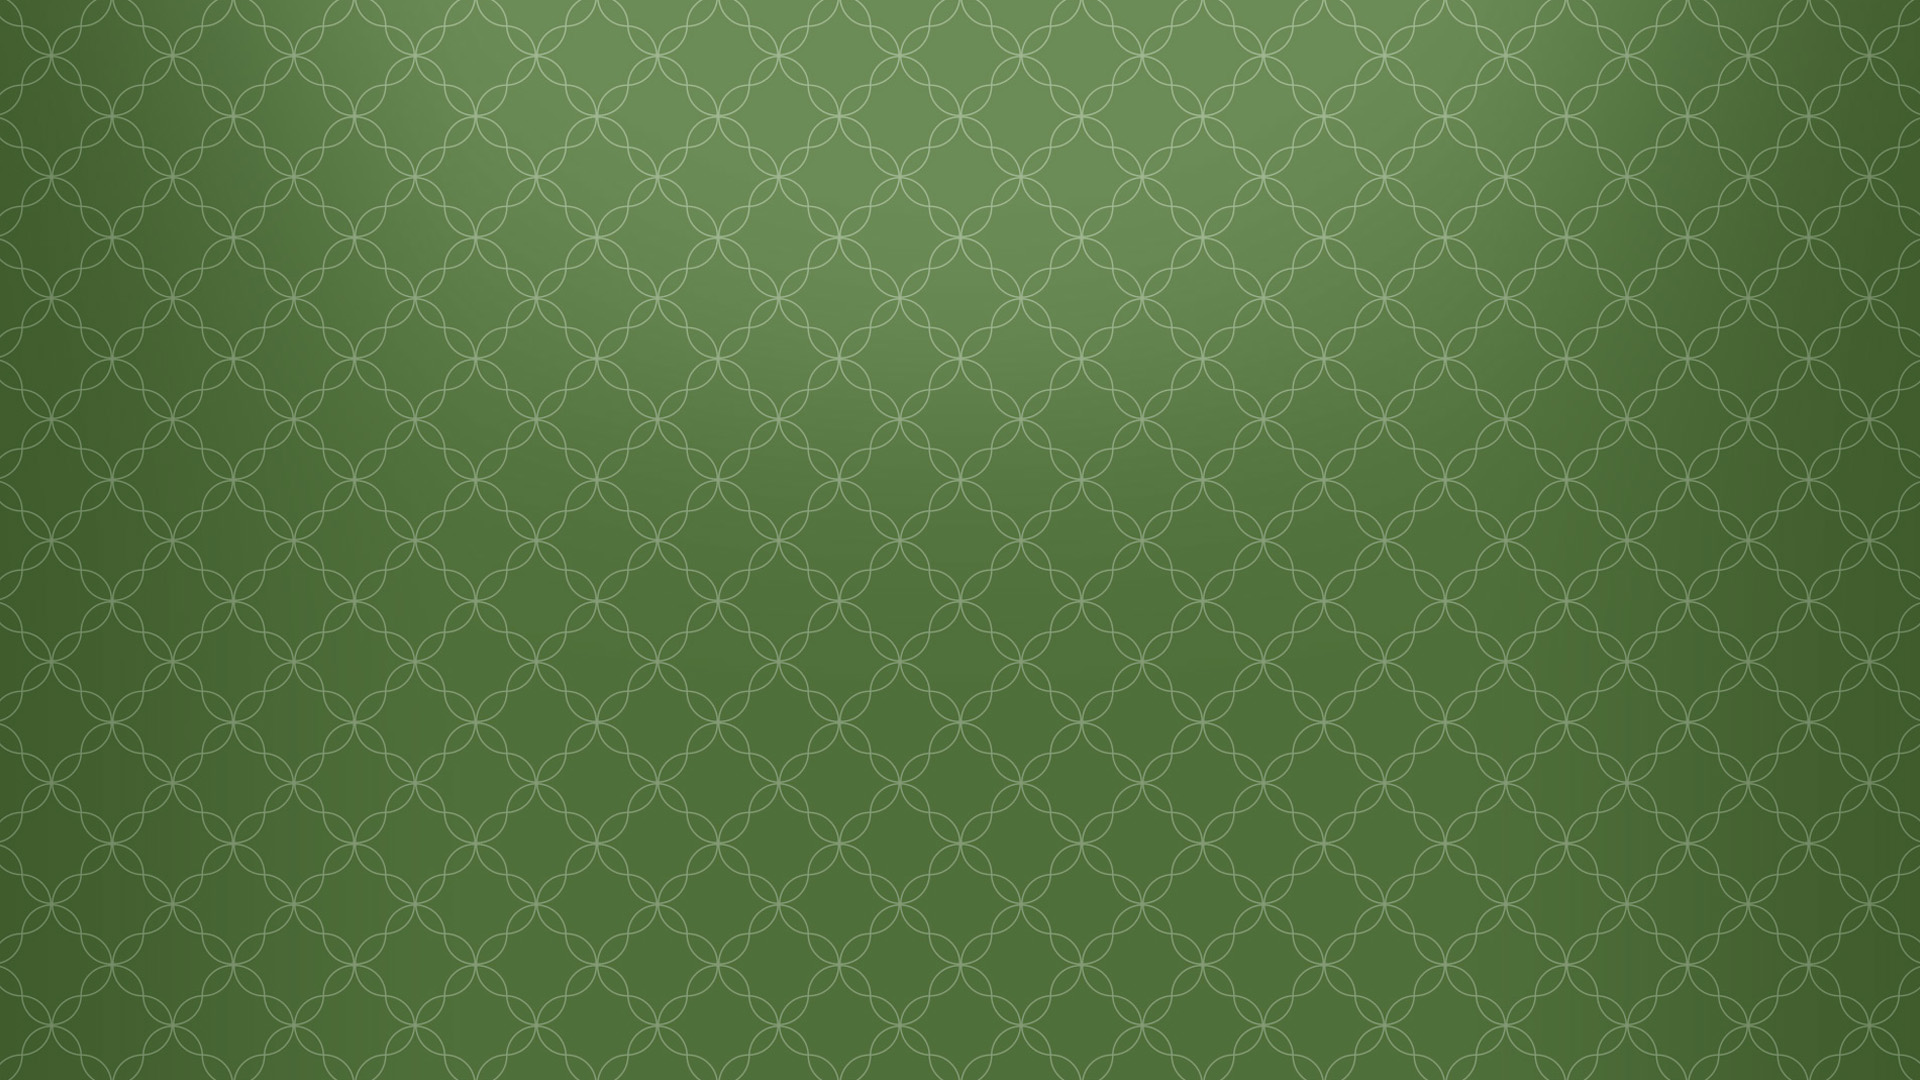 オリーブグリーンの壁紙,緑,パターン,繊維,草,壁紙